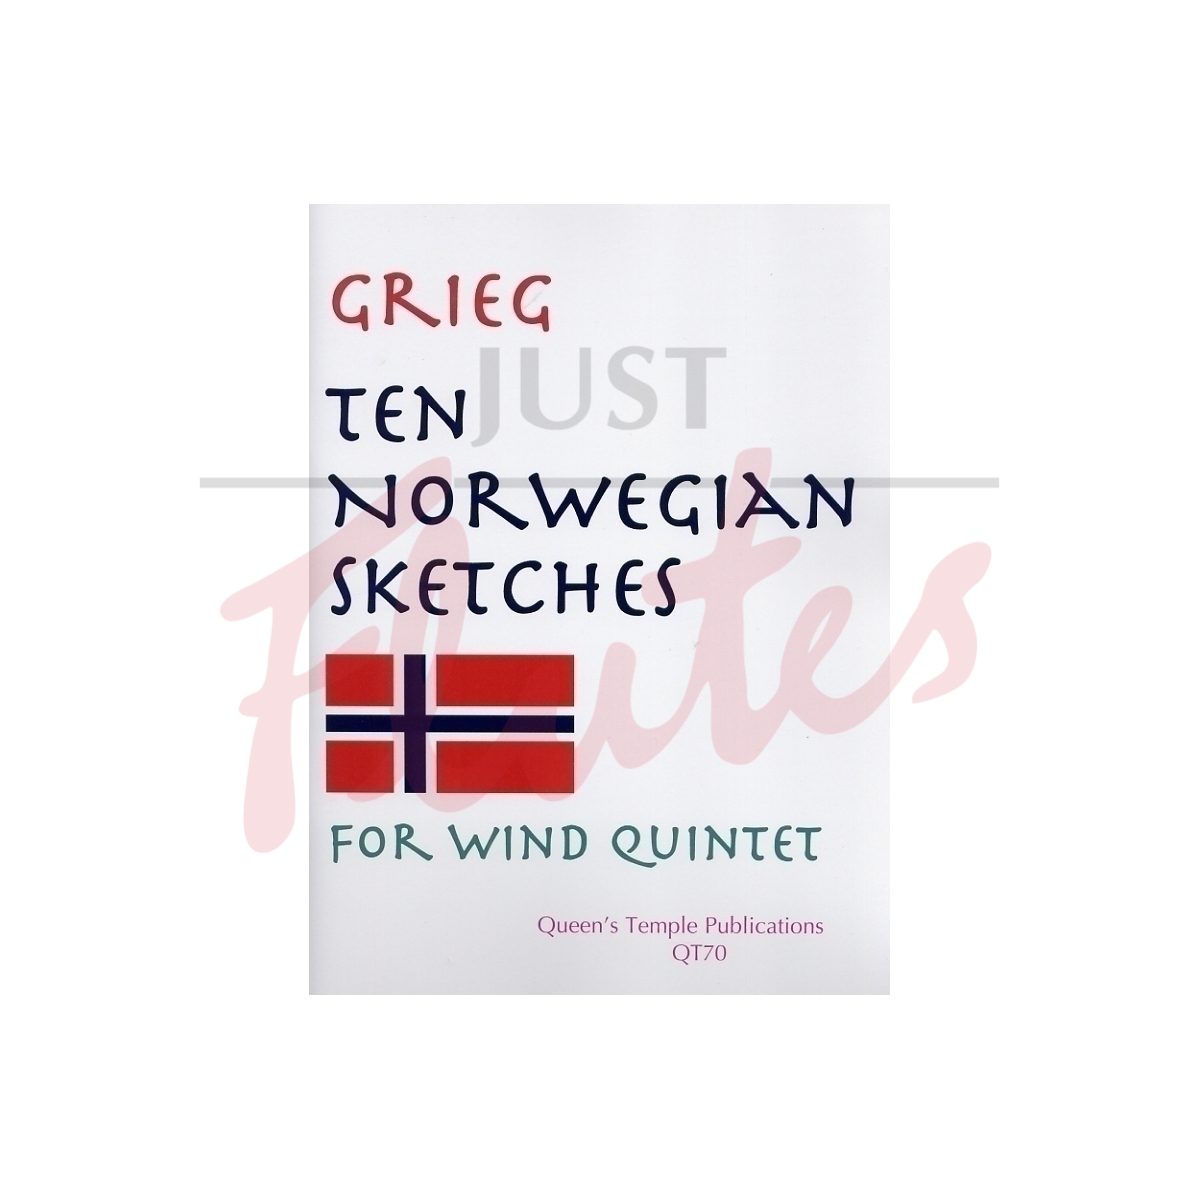 Ten Norwegian Sketches